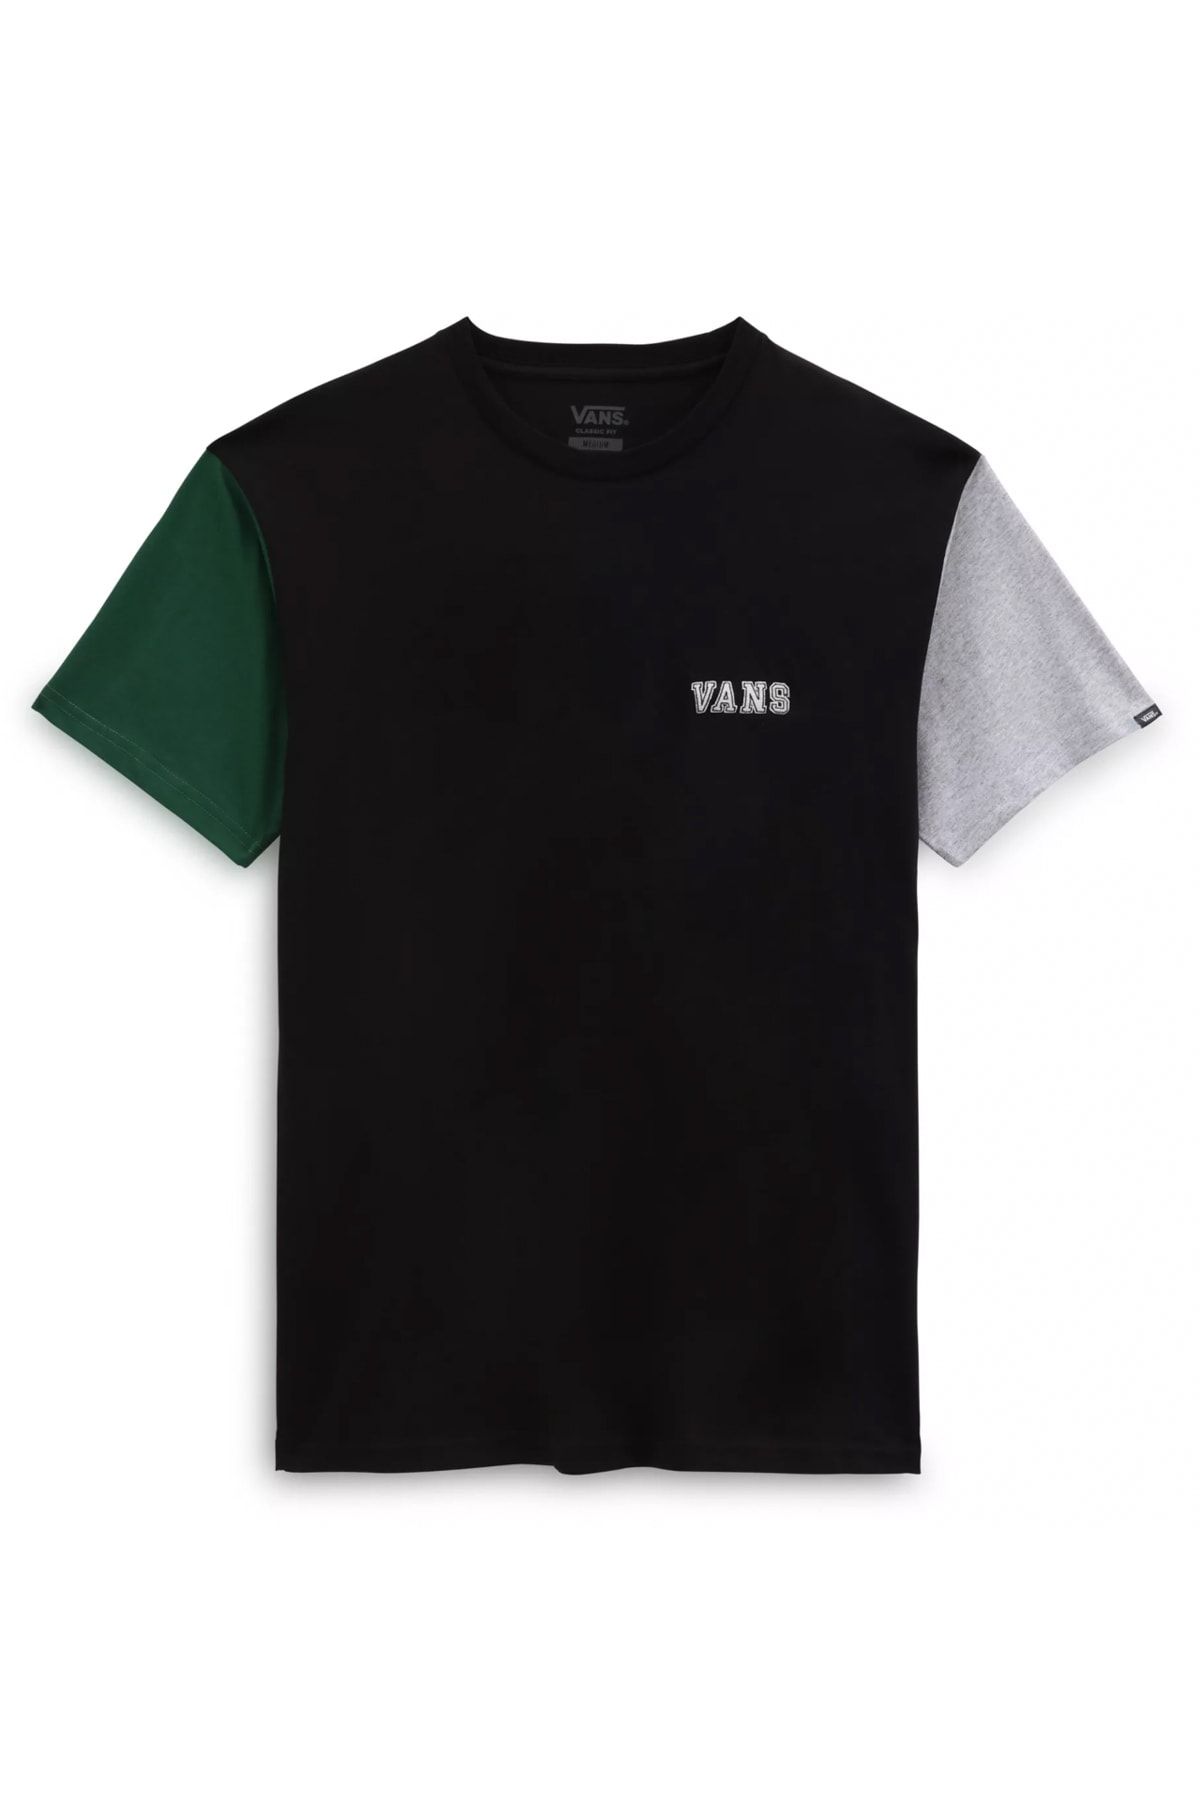 Vans Colorblock Varsity Ss Tee Siyah Erkek T-shirt